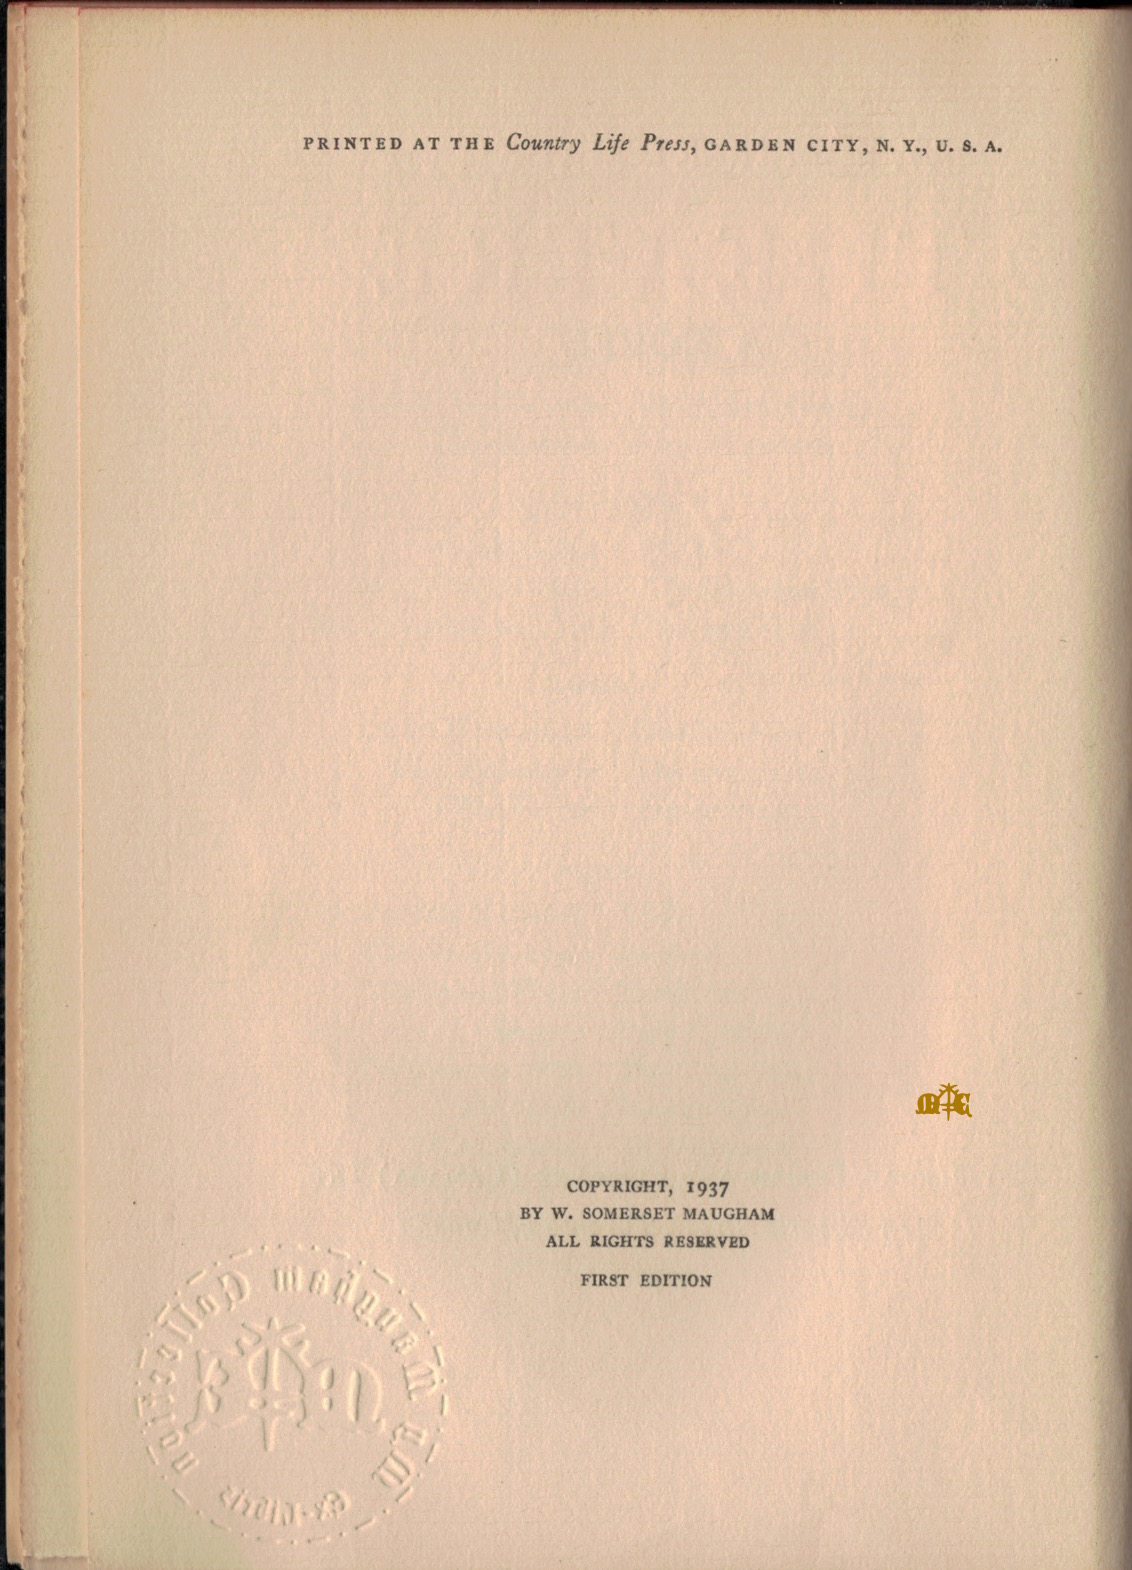 copyright of Theatre 1937 Doubleday, Doran & Co.